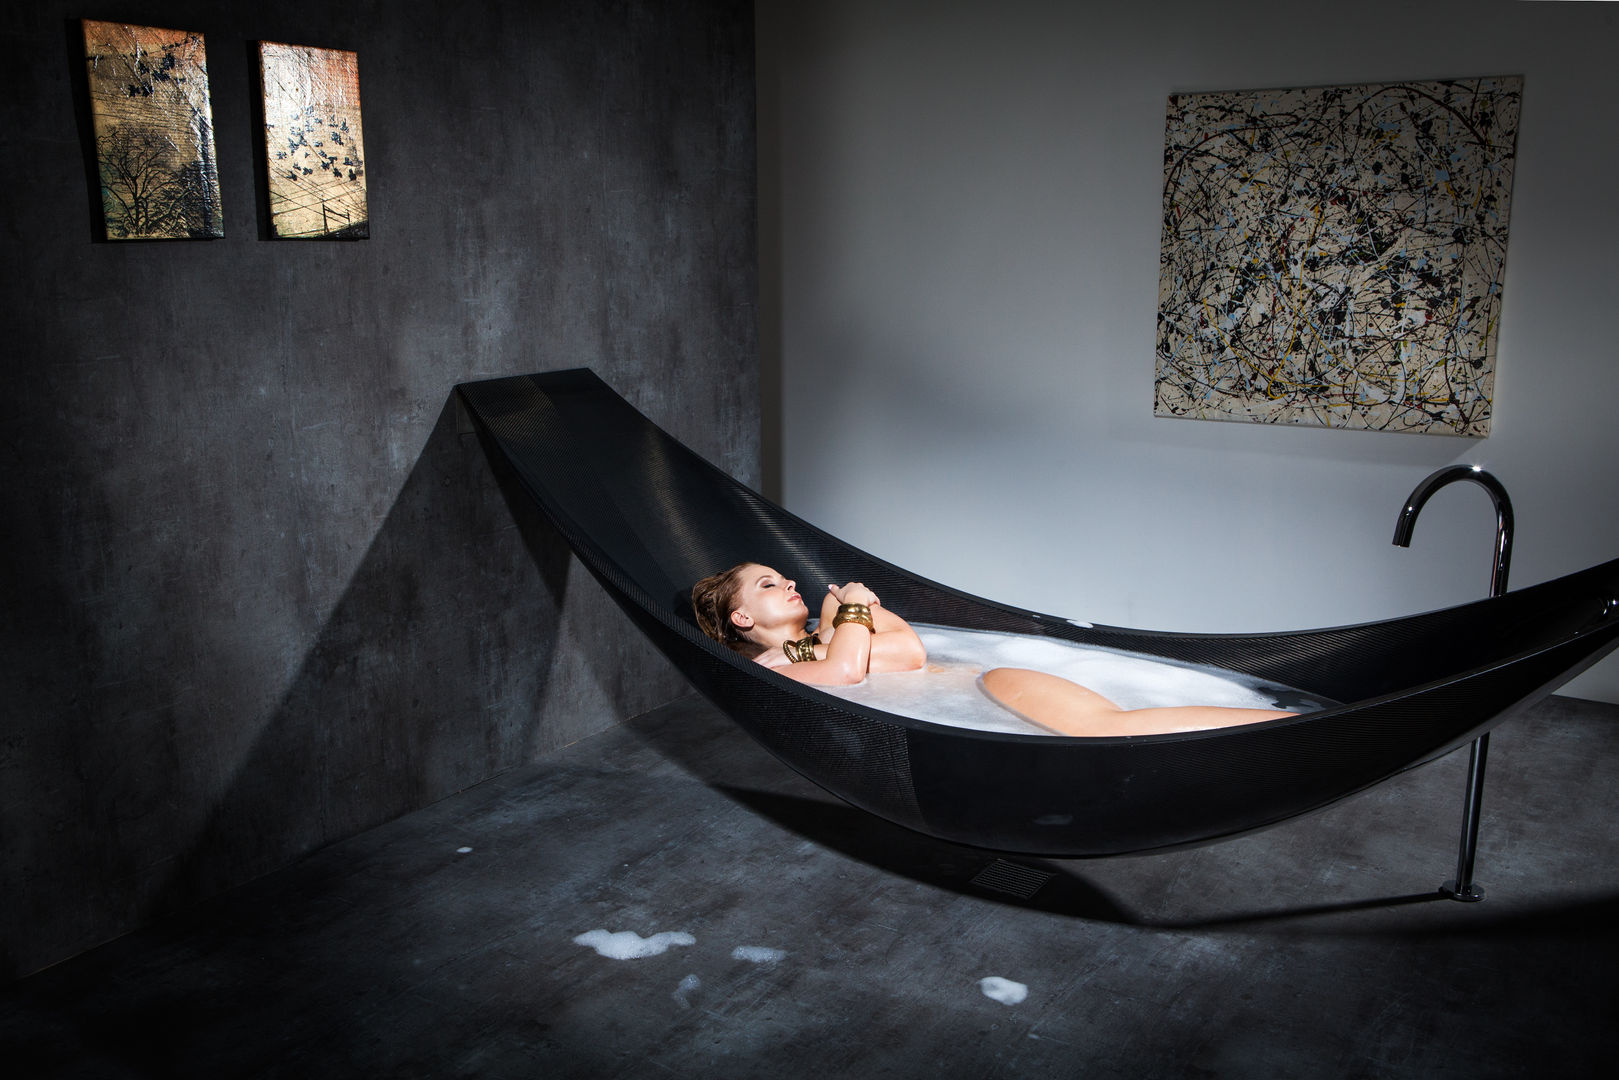 Badewanne Objekte, Design by Torsten Müller Design by Torsten Müller Bathroom Bathtubs & showers